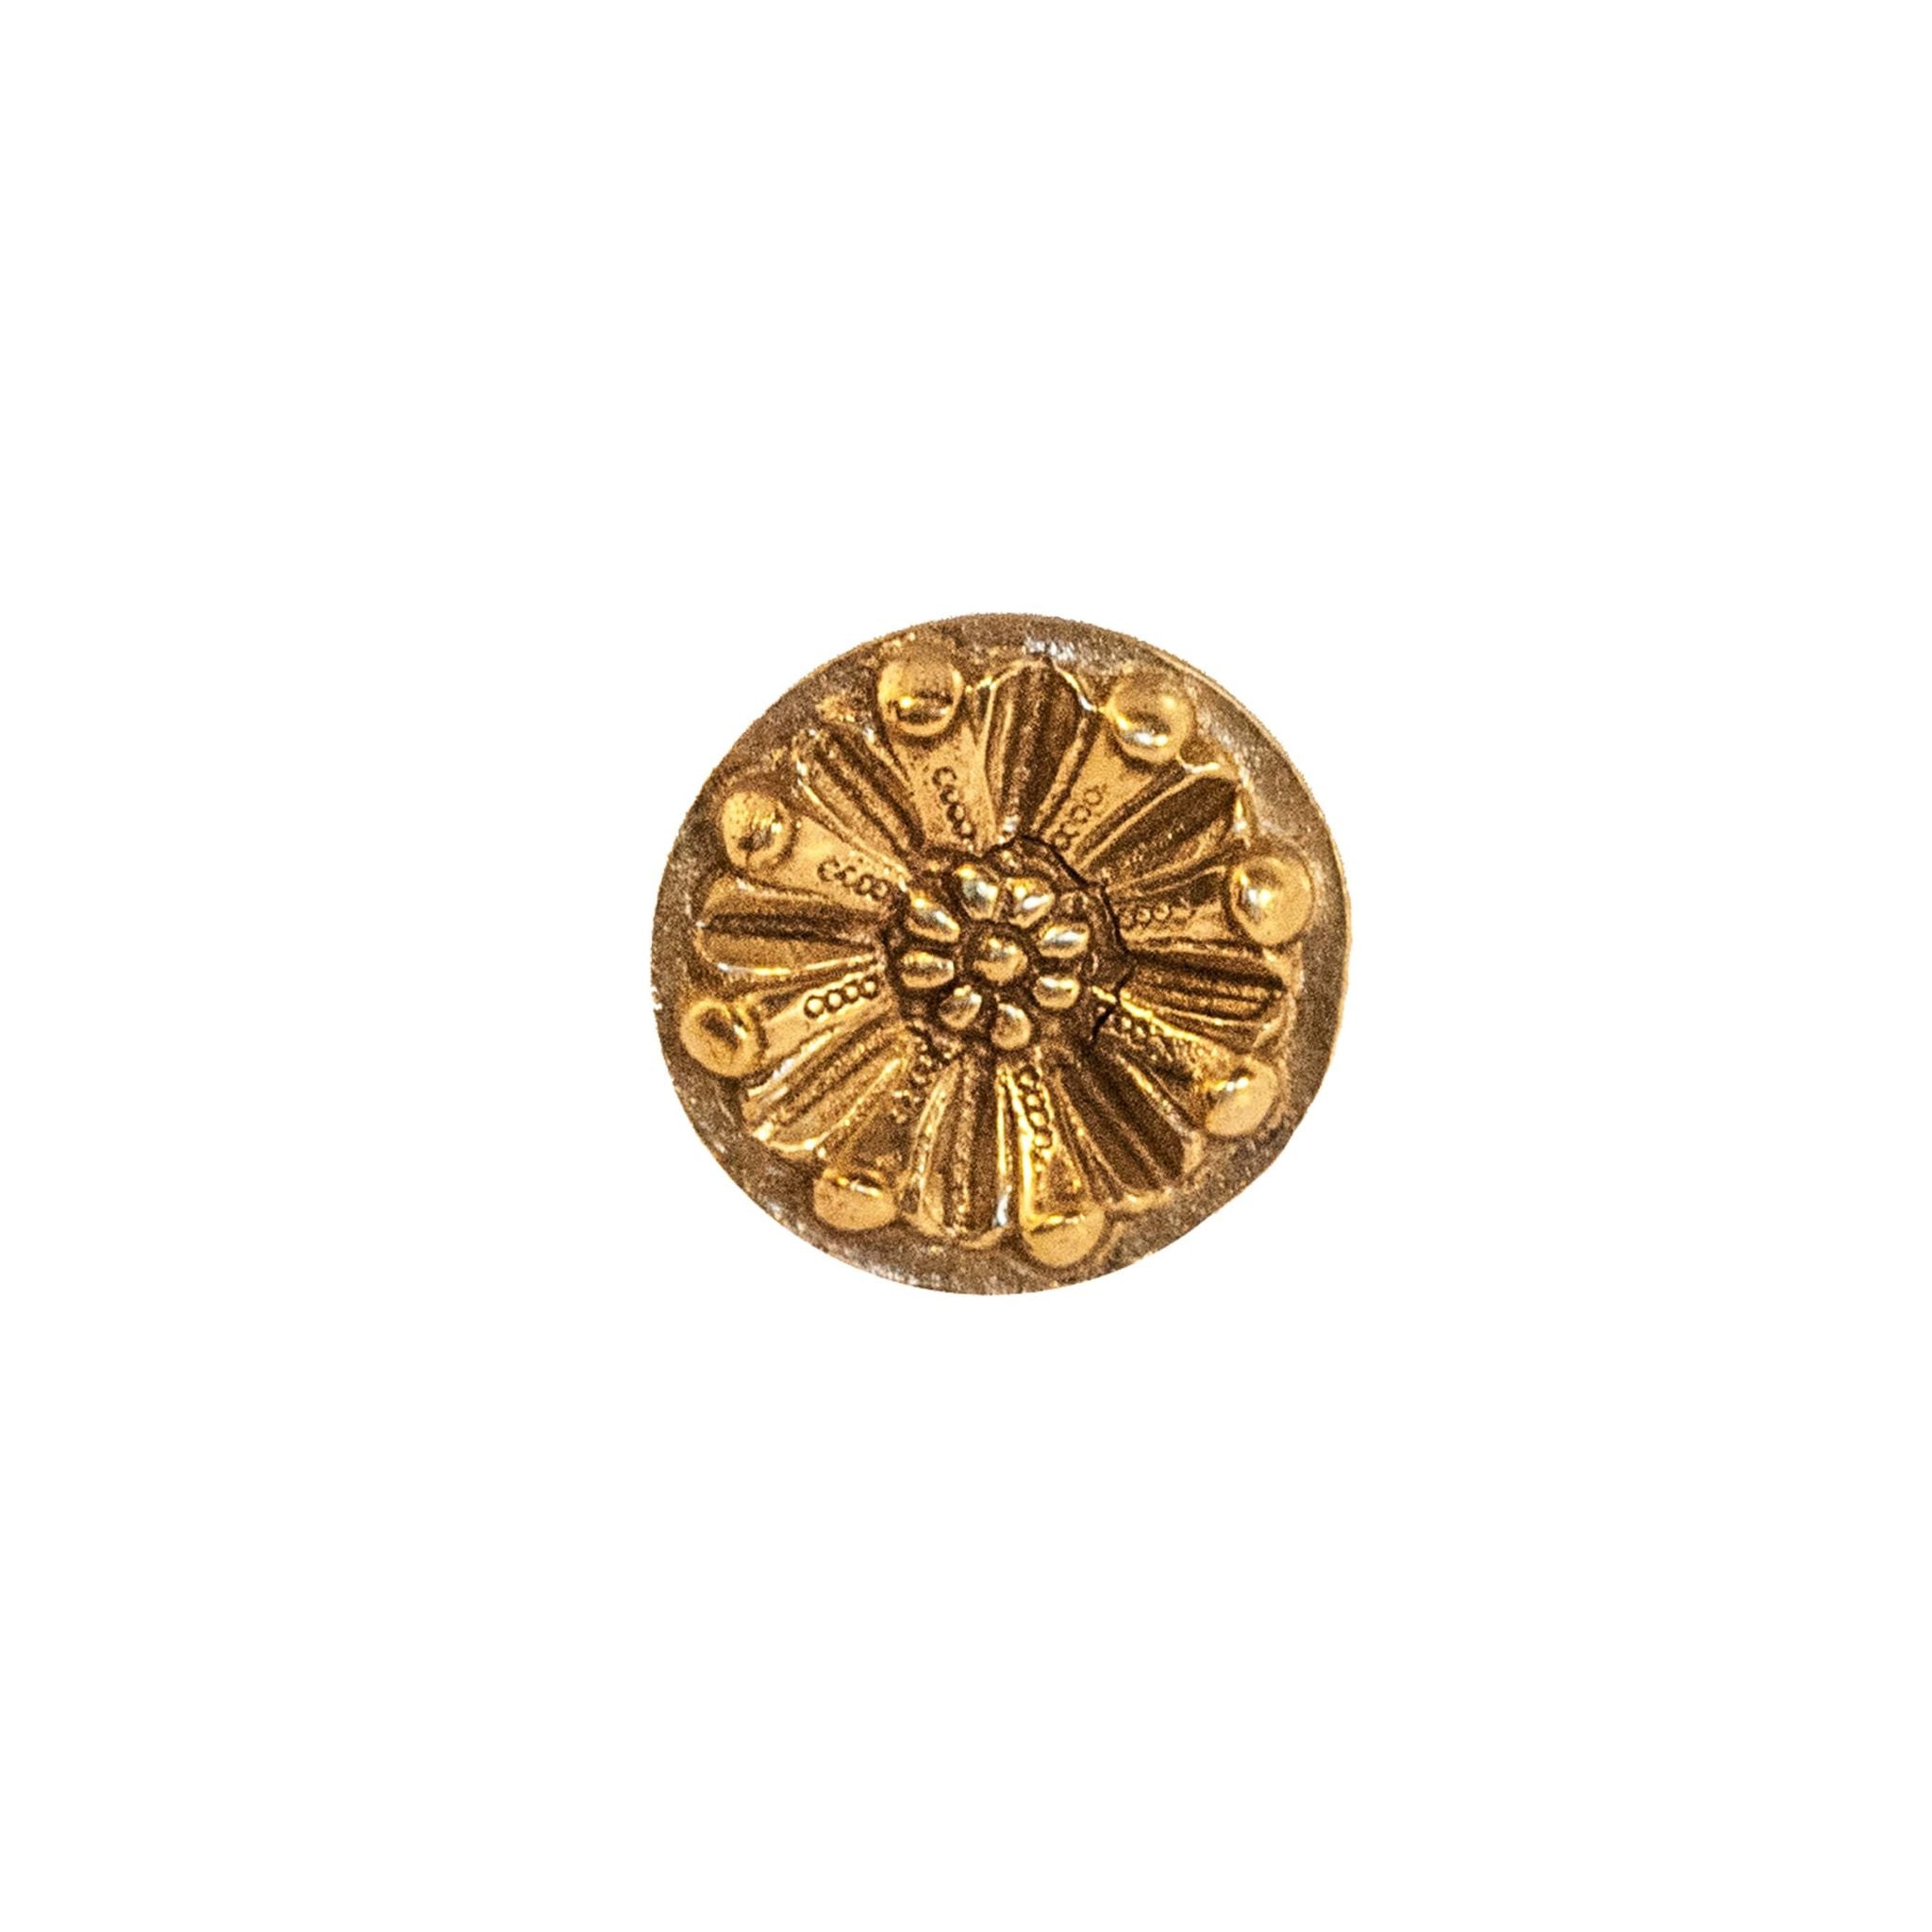 Novecento brass circular daisy knob - ilbronzetto